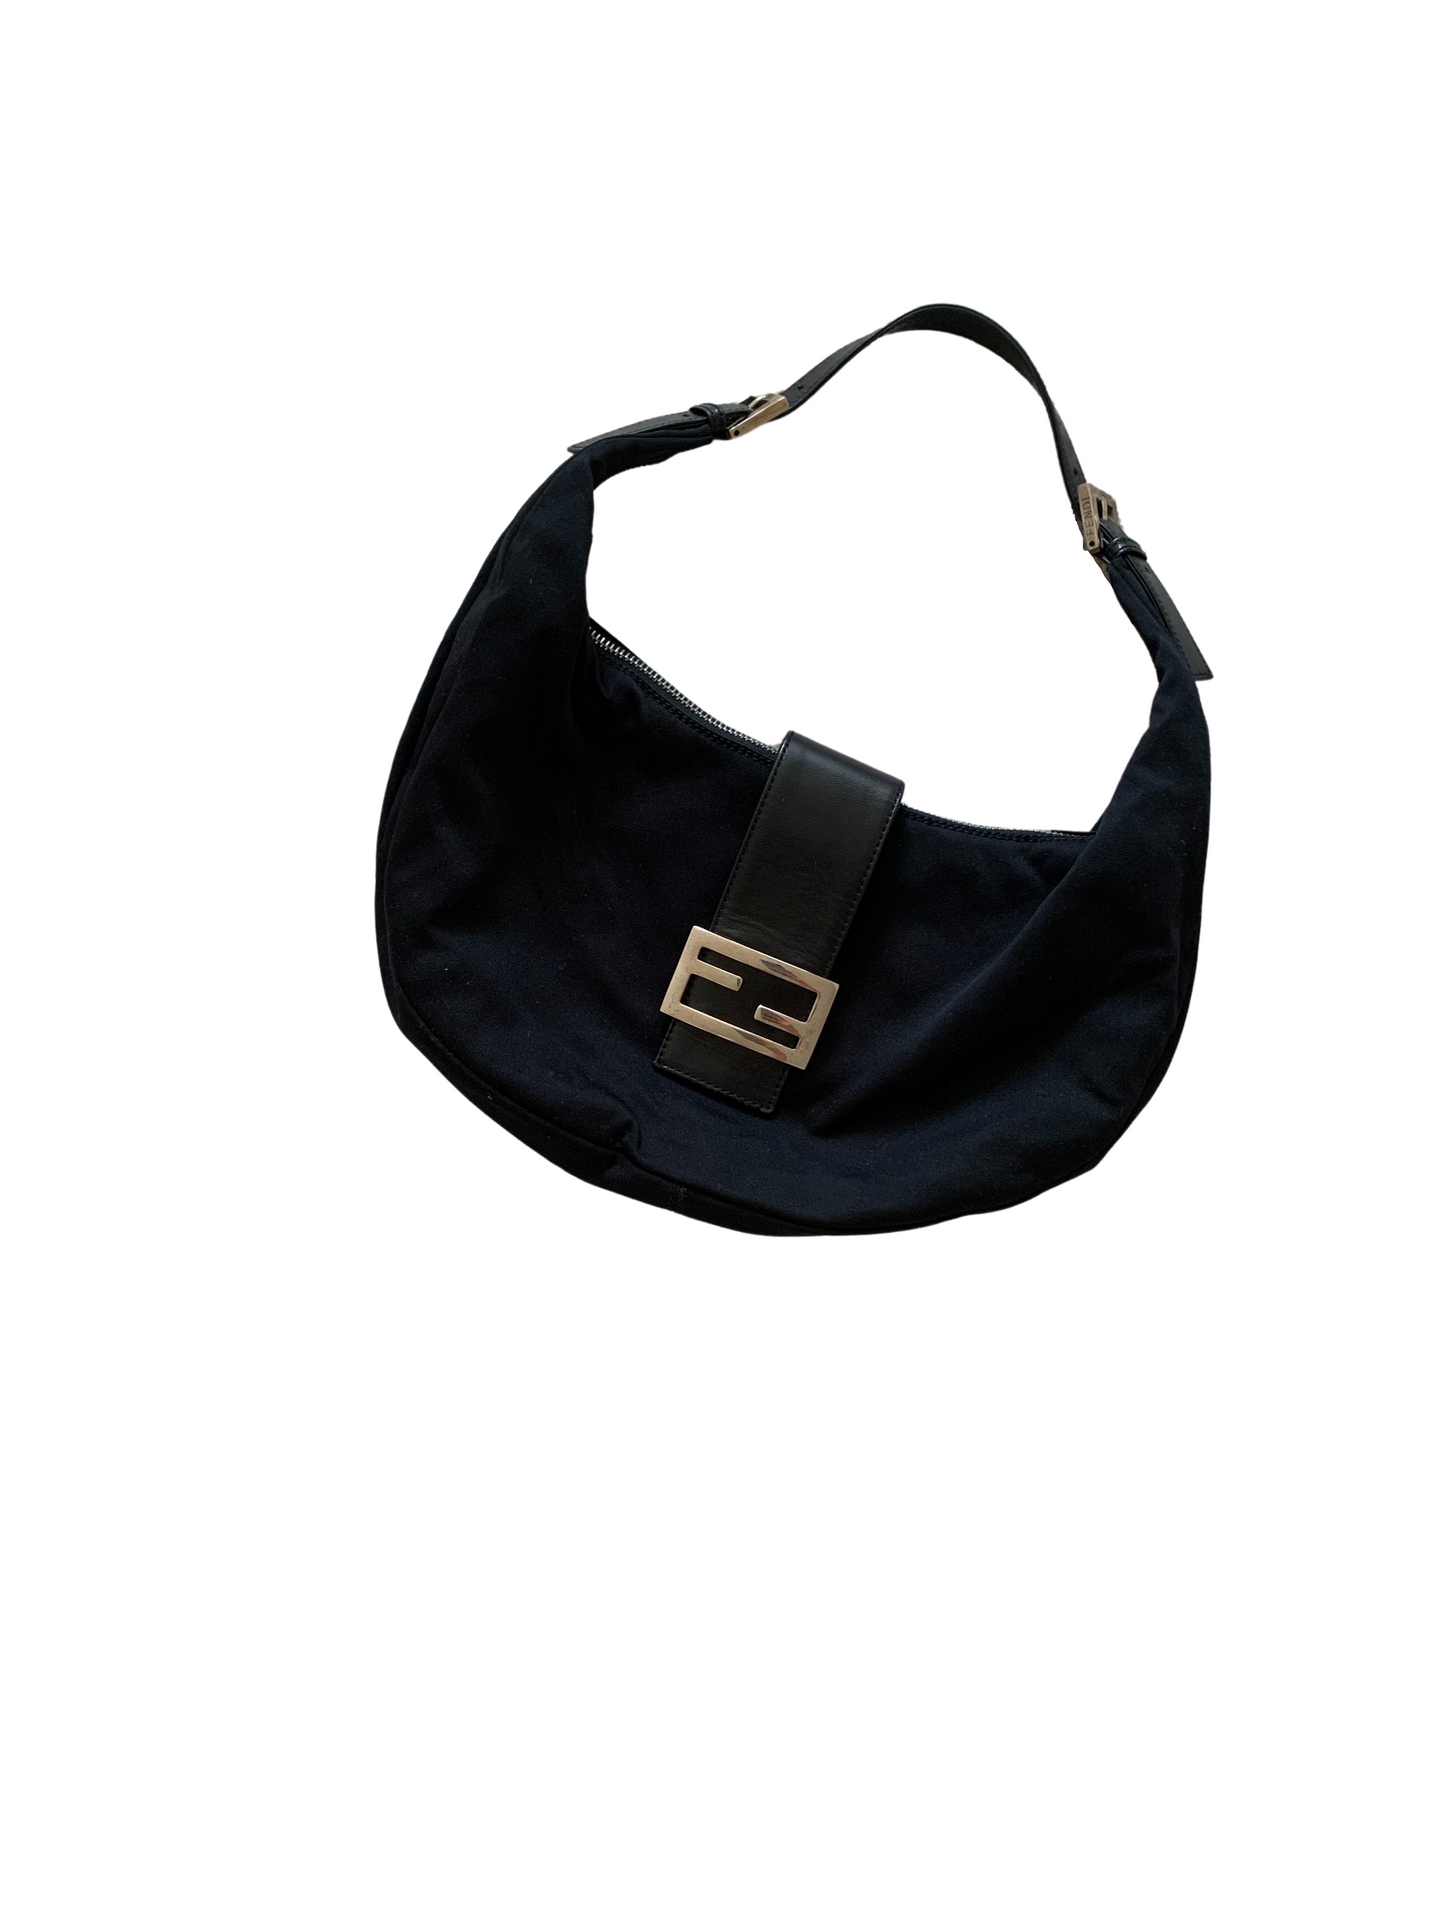 Fendi Black Chemical Fiber & Leather Shoulder Bag